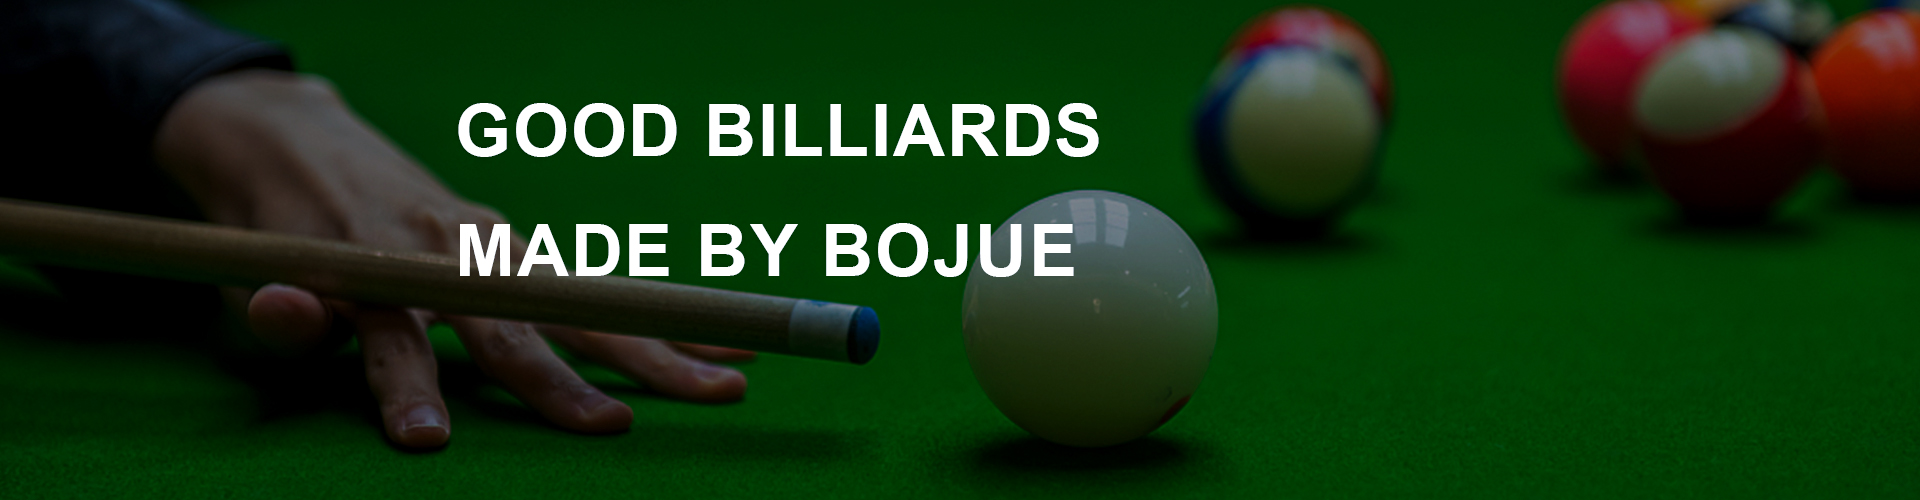 Fancy 9 ball billiards